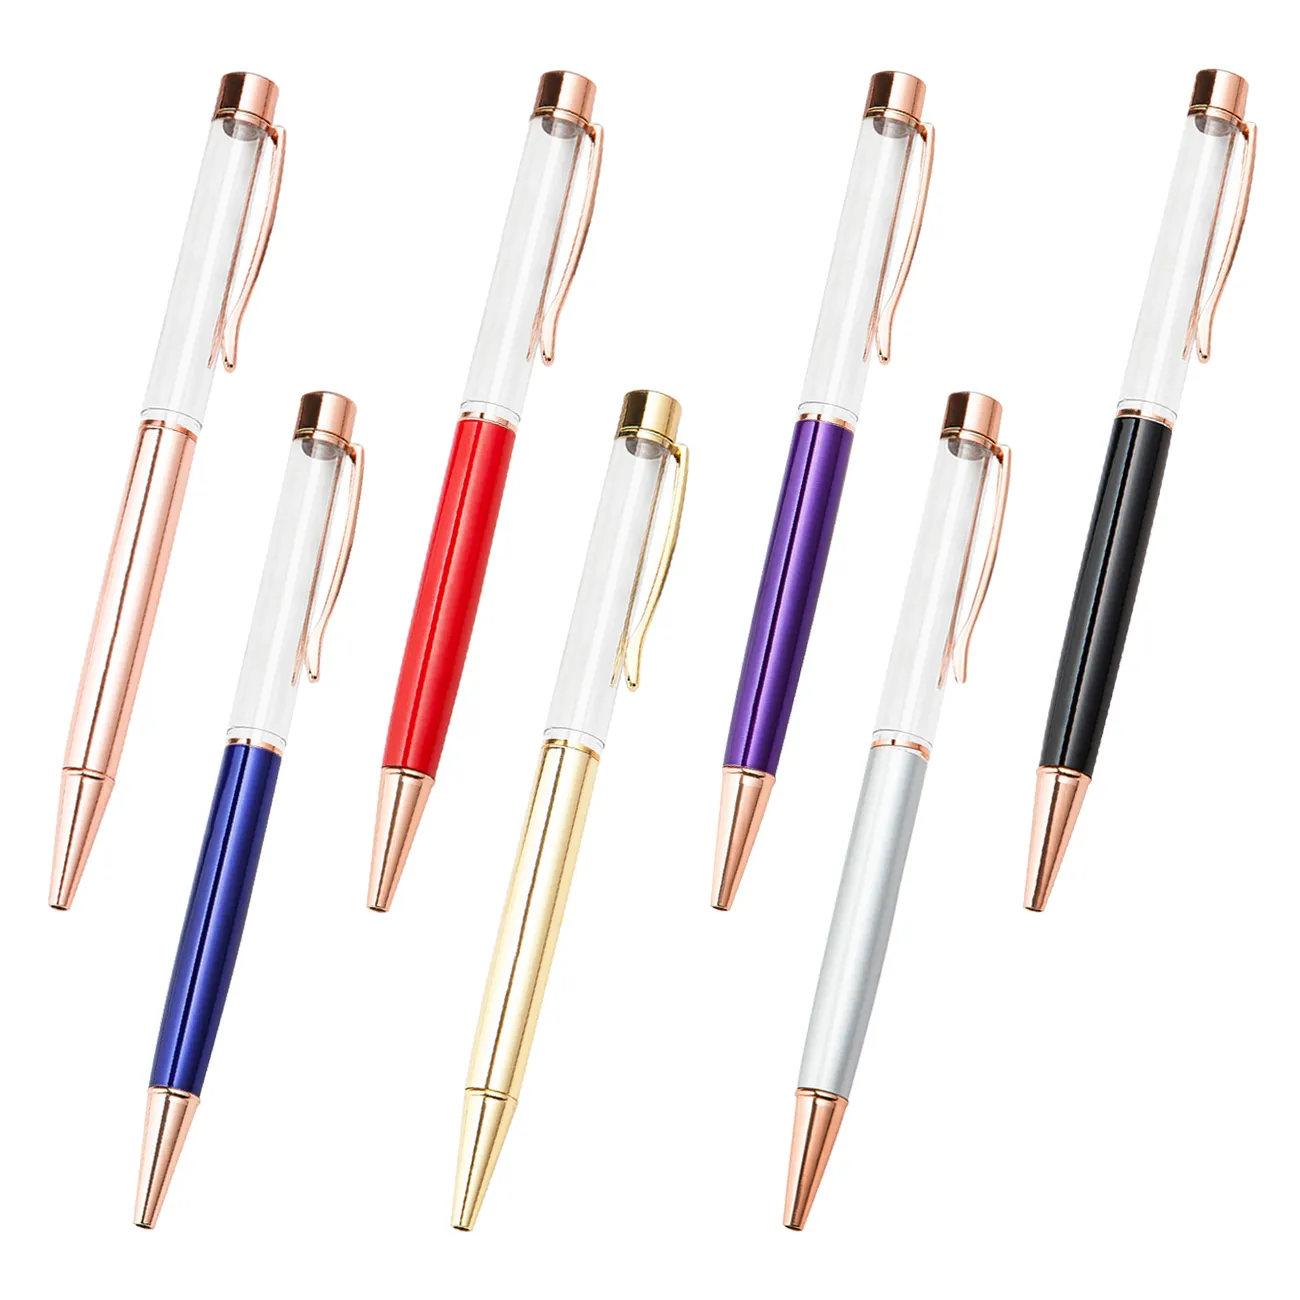 일본 베스트 셀러 패션 크리 에이 티브 DIY 드라이 플라워 빈 튜브 금속 펜 색상과 스타일 반짝이 볼 포인트 펜을 혼합 할 수 있습니다